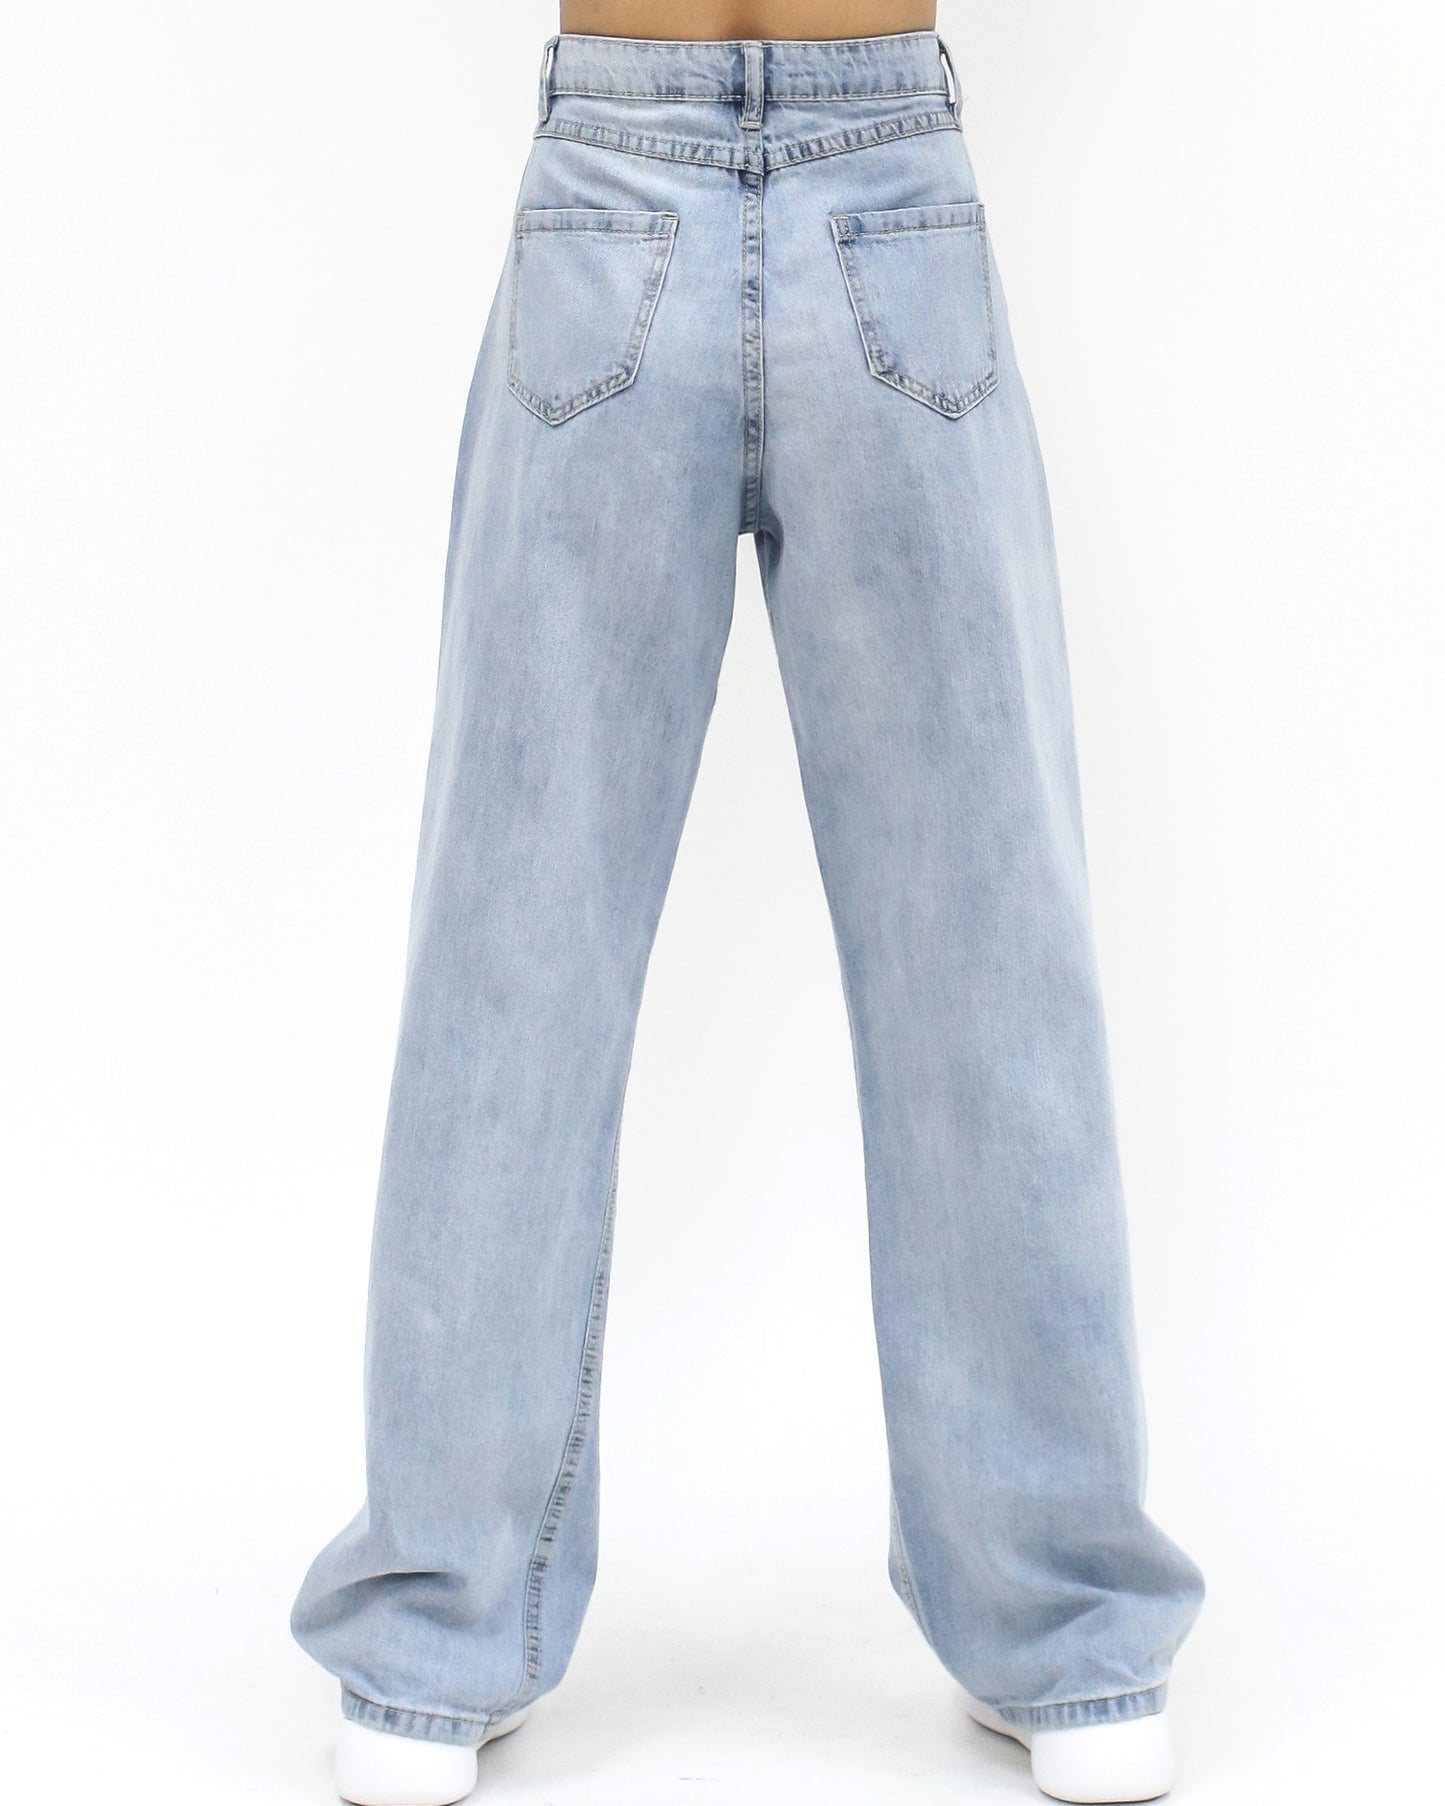 light blue denim straight legs jeans *pre-order*